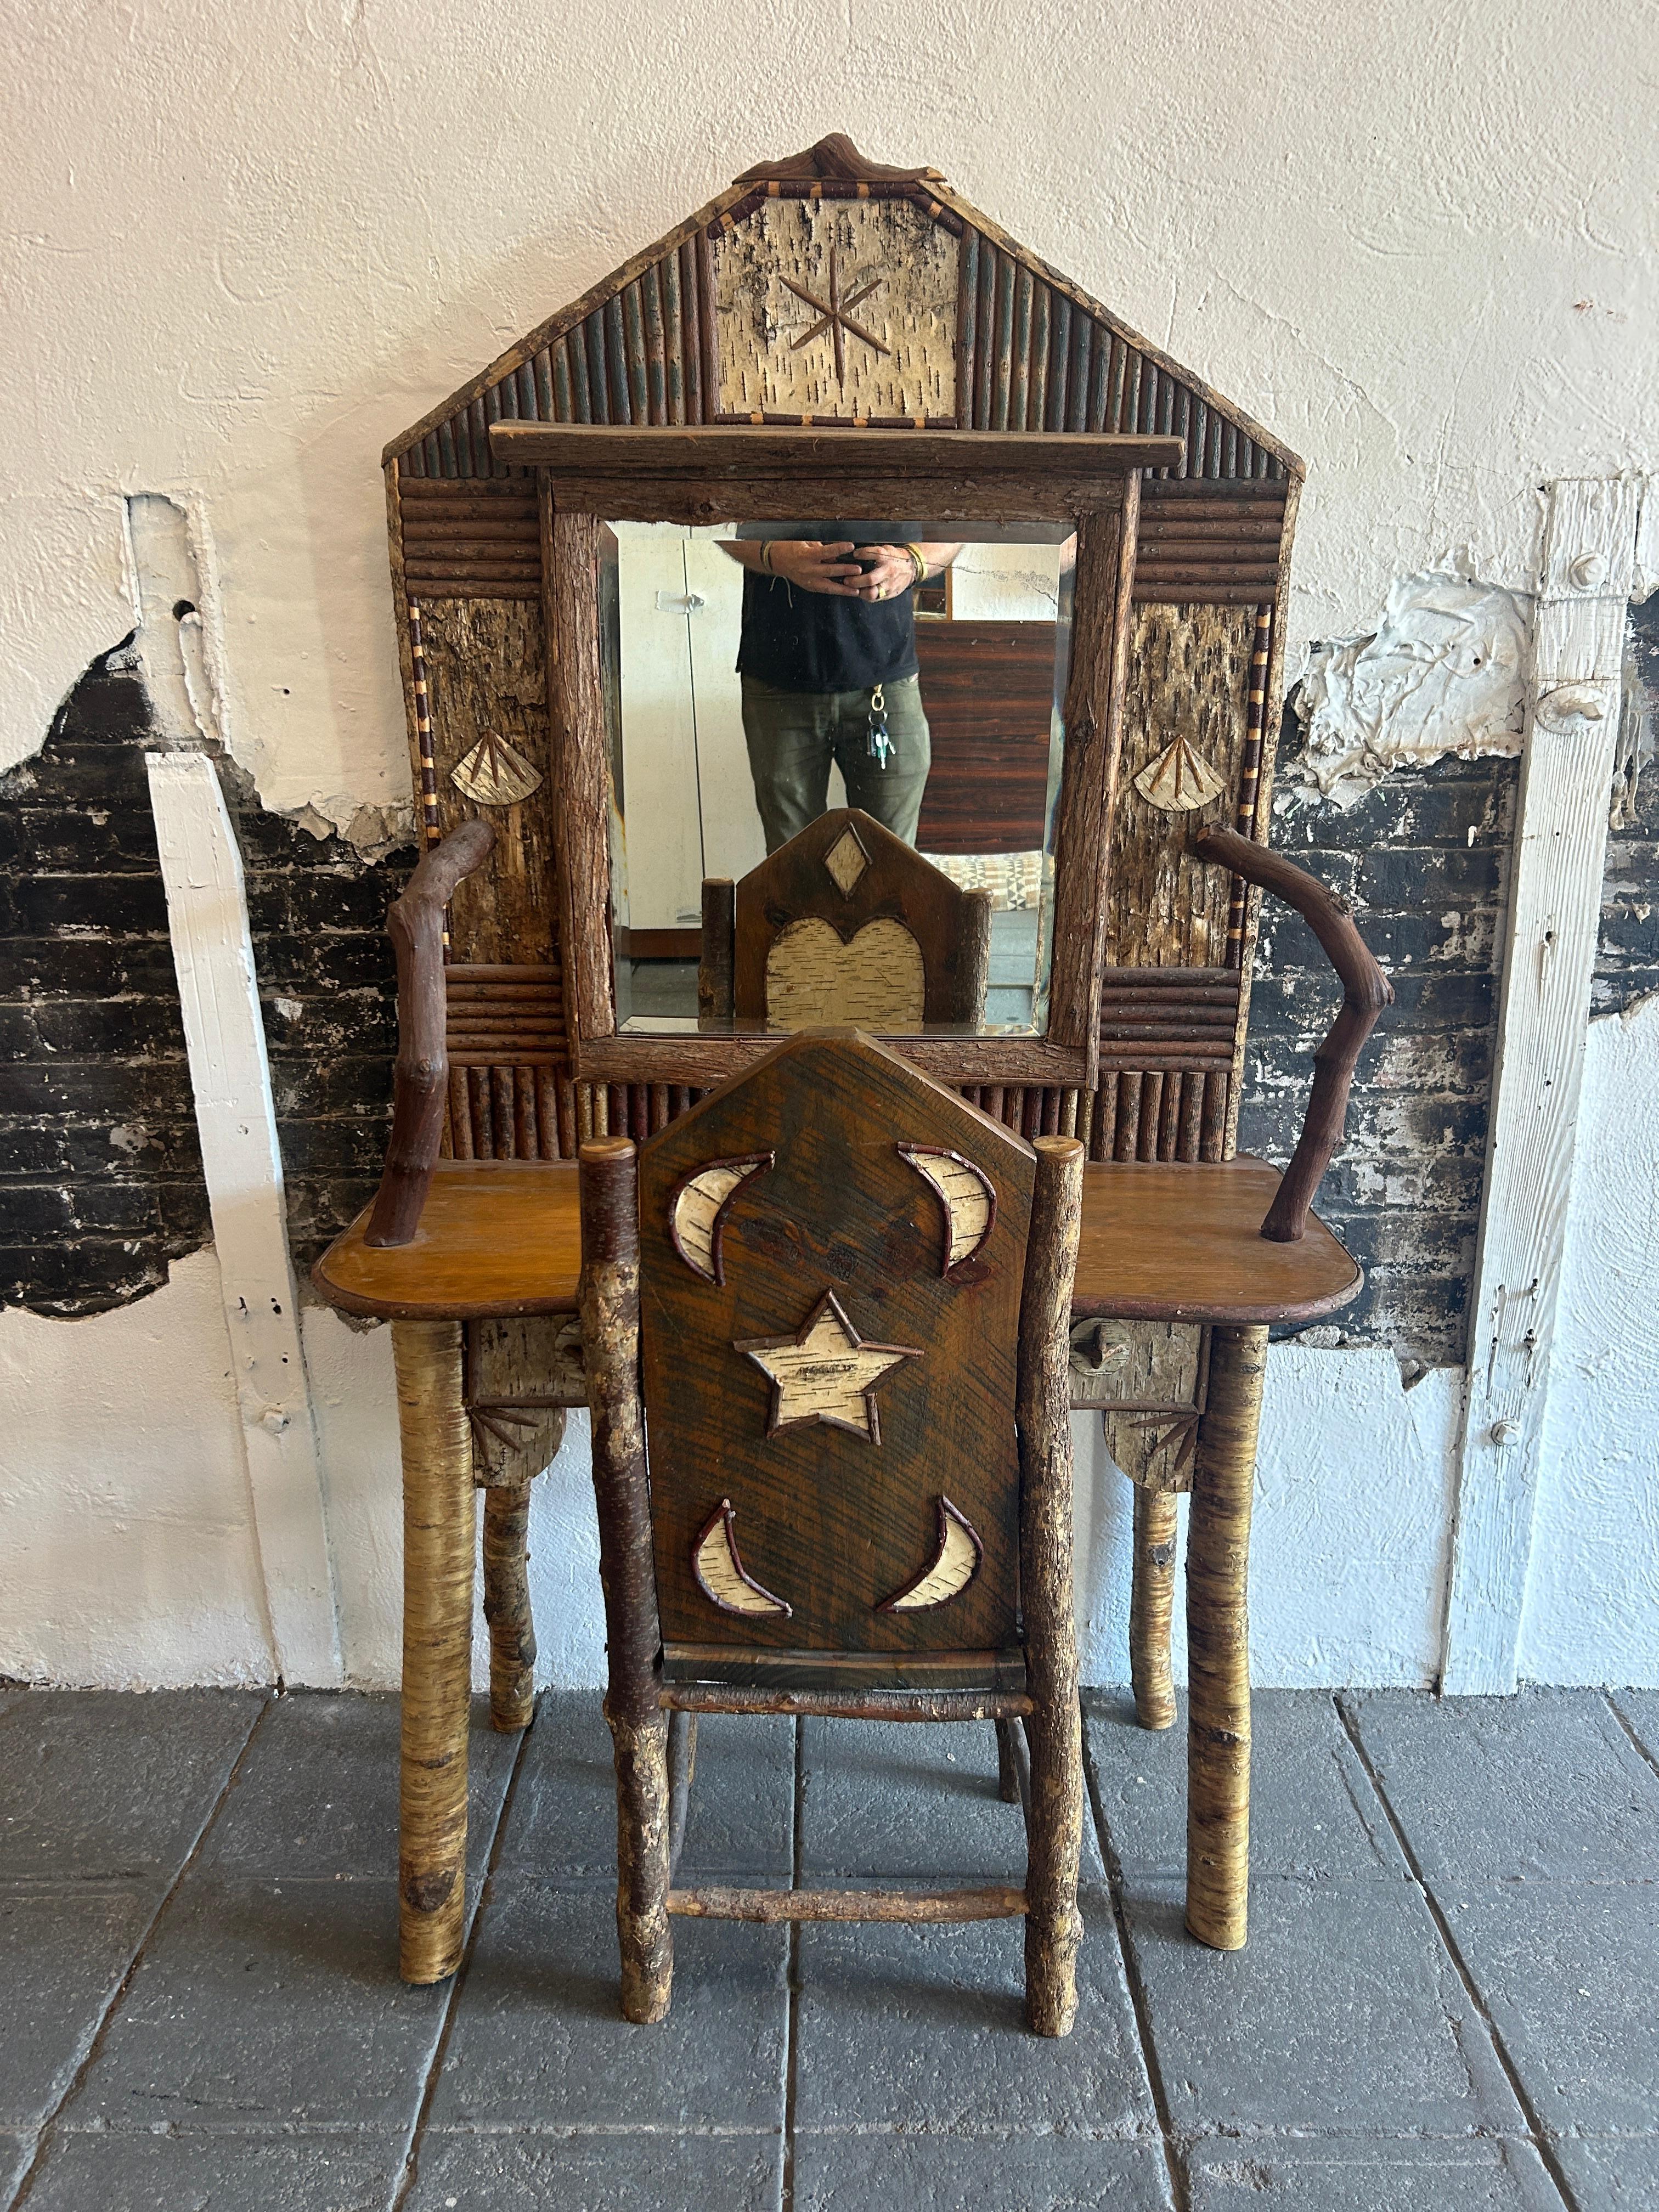 Skurrile rustikale Adirondack Kind Vanity Mirror Schreibtisch und Stuhl American Studio Handwerk. Sehr schöner Kinderschreibtisch für eine Hütte oder ein rustikal gestaltetes Haus. Alles handgefertigt in den USA aus heimischen Bäumen und Holz in